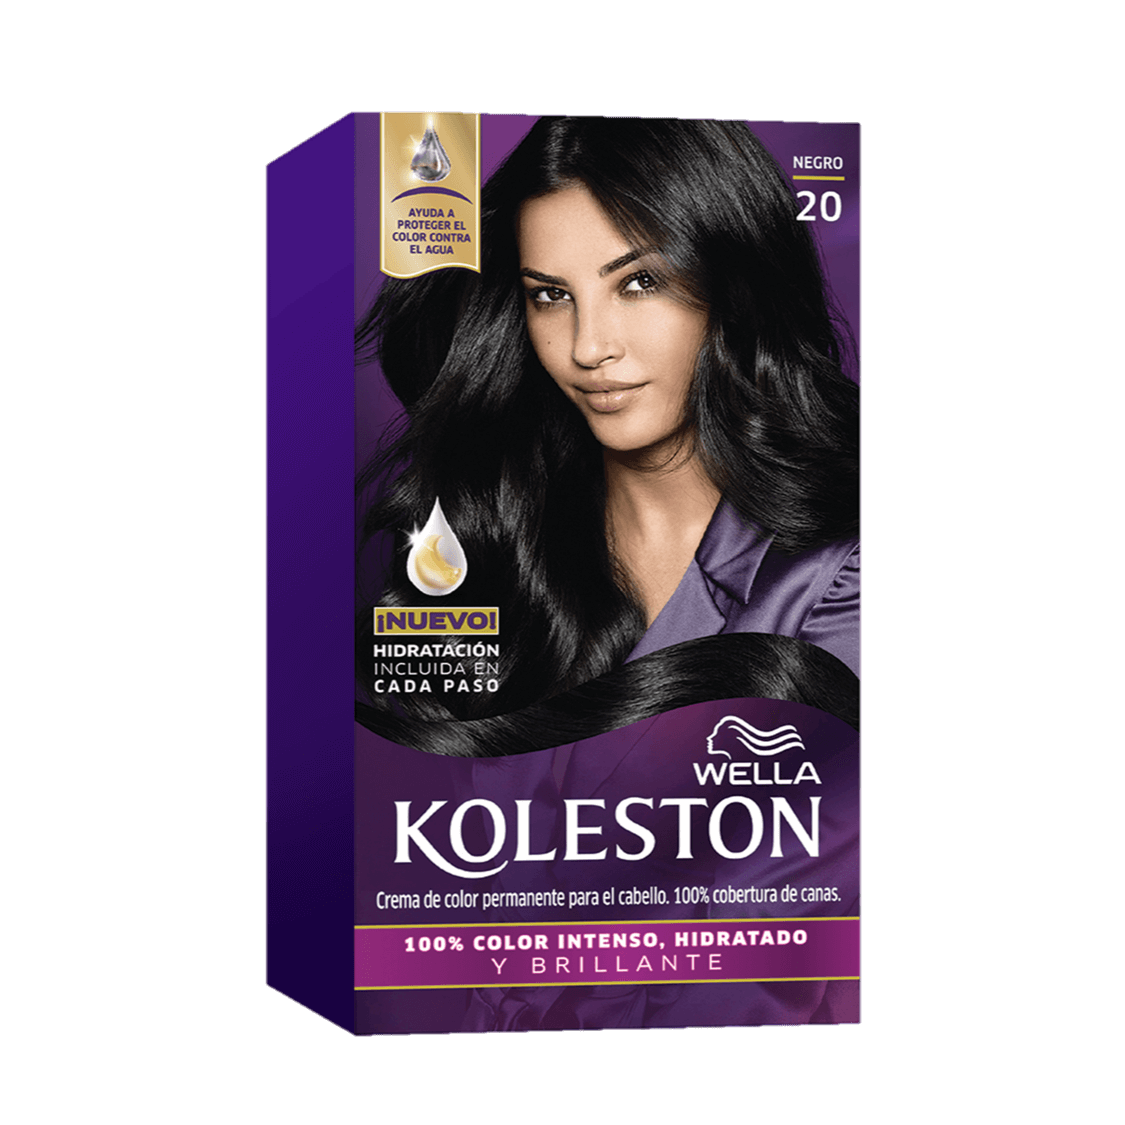 Crema de color permanente para el cabello con factor de protección contra agua de Koleston de Wella - 20 |